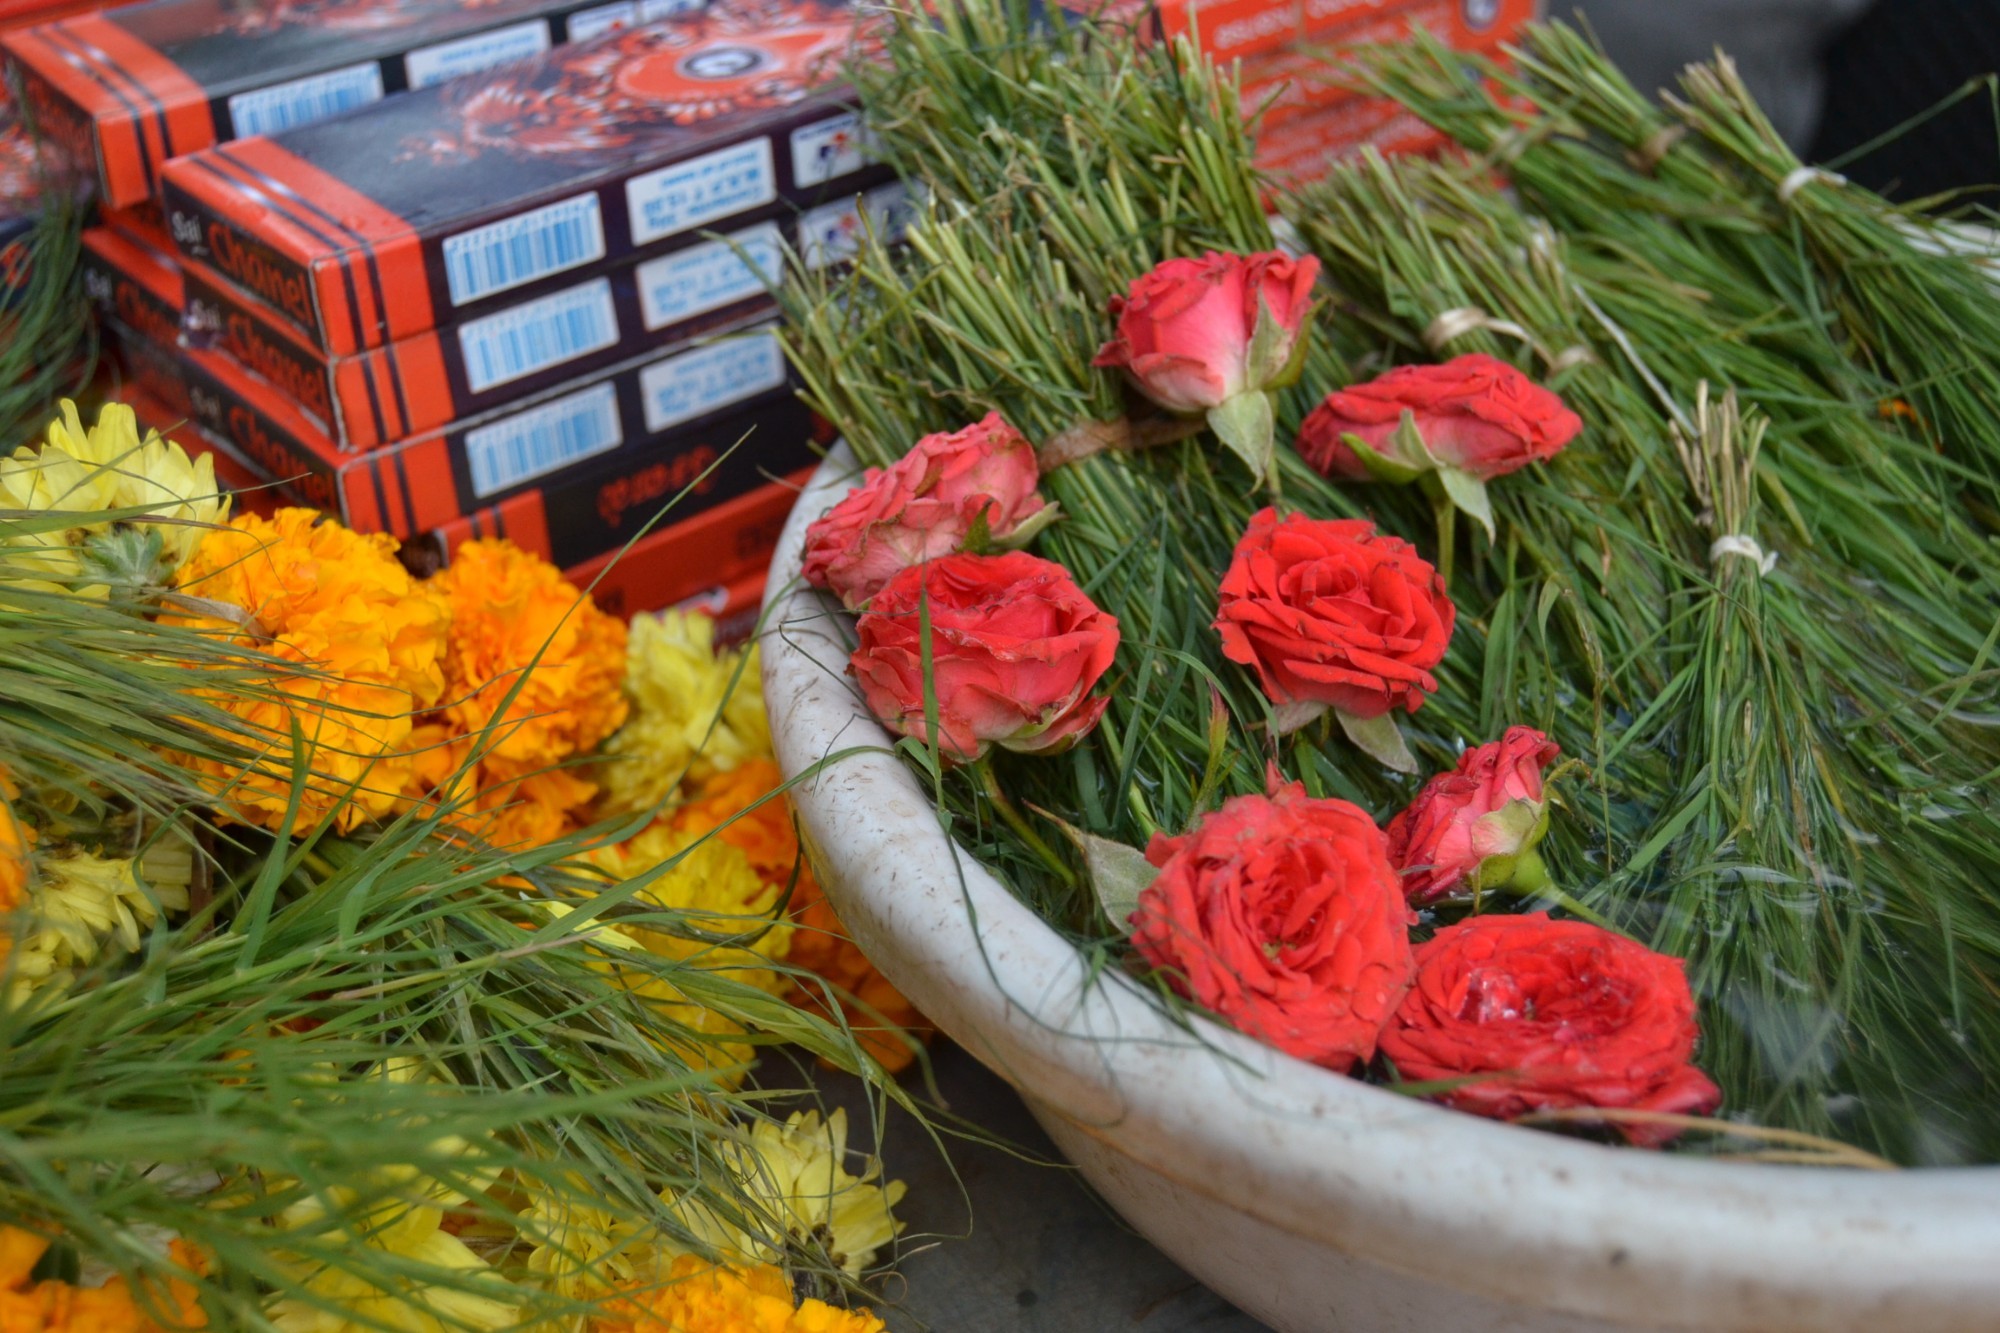 ГОА. Для утренних ритуалов возле храма Ганеша продают разные цветы, травы и благовония